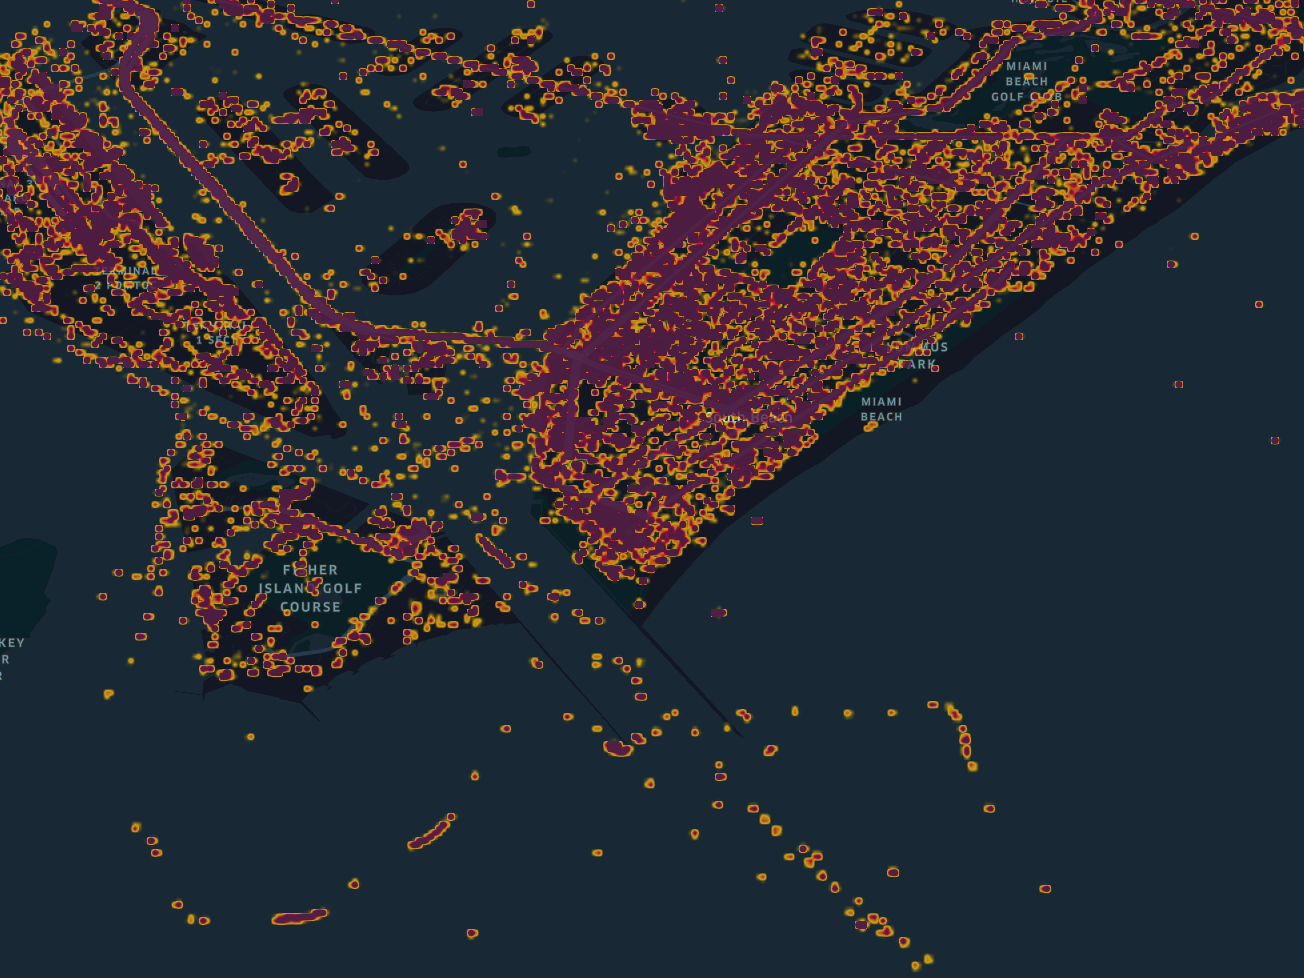 Miami beach heatmap during COVID-19 lockdown